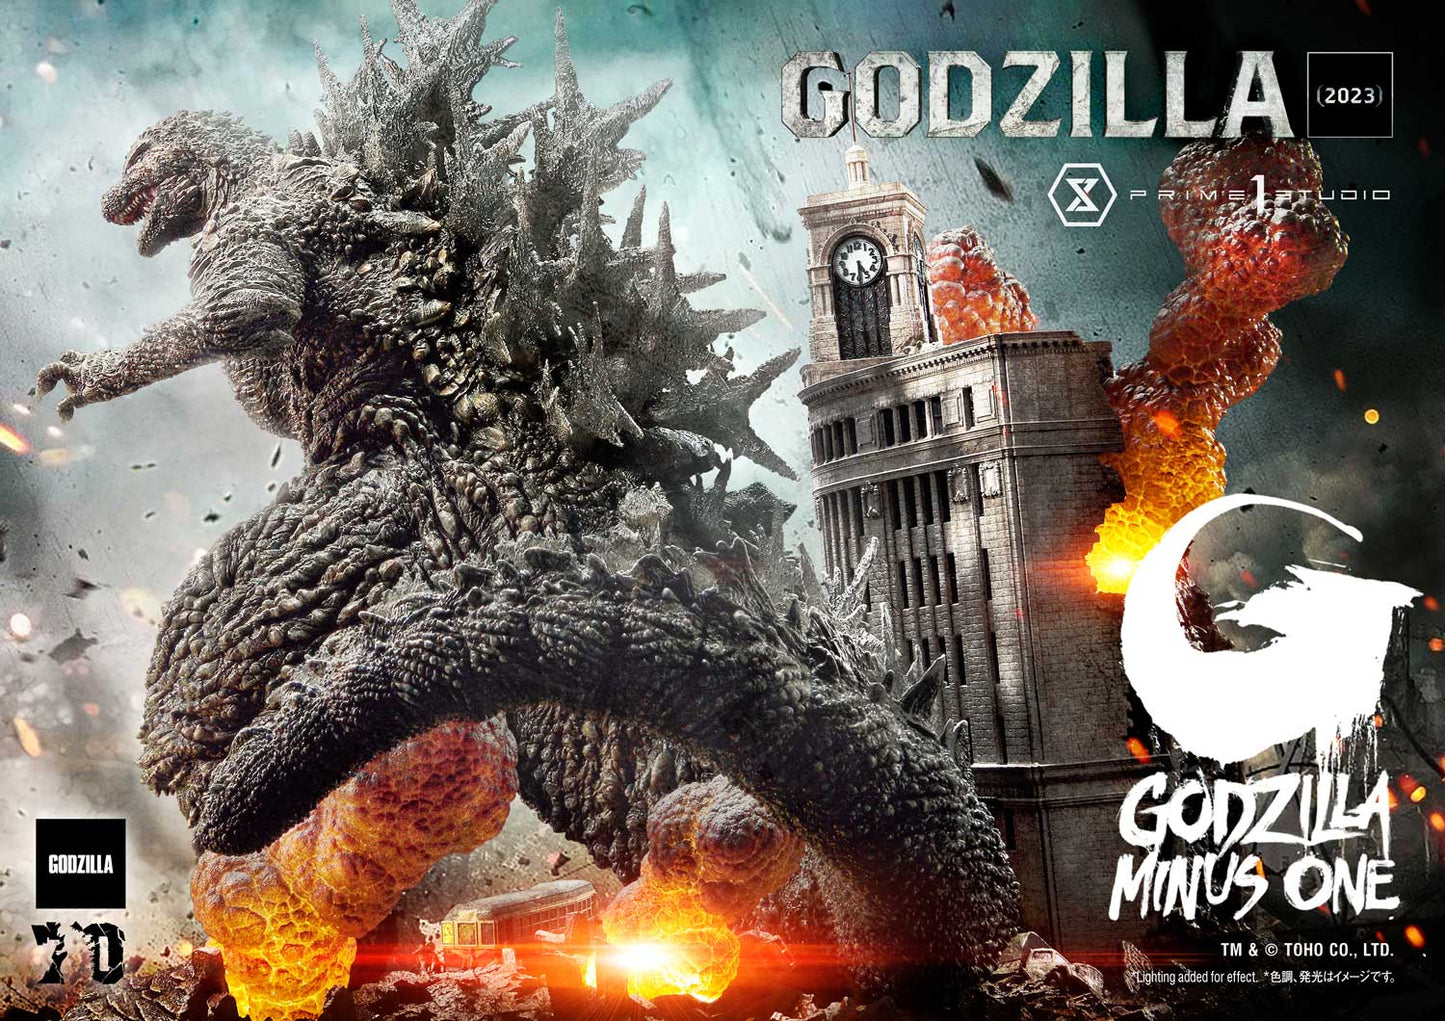 PRE-ORDER GODZILLA MINUS ONE (Film)  Godzilla (2023)